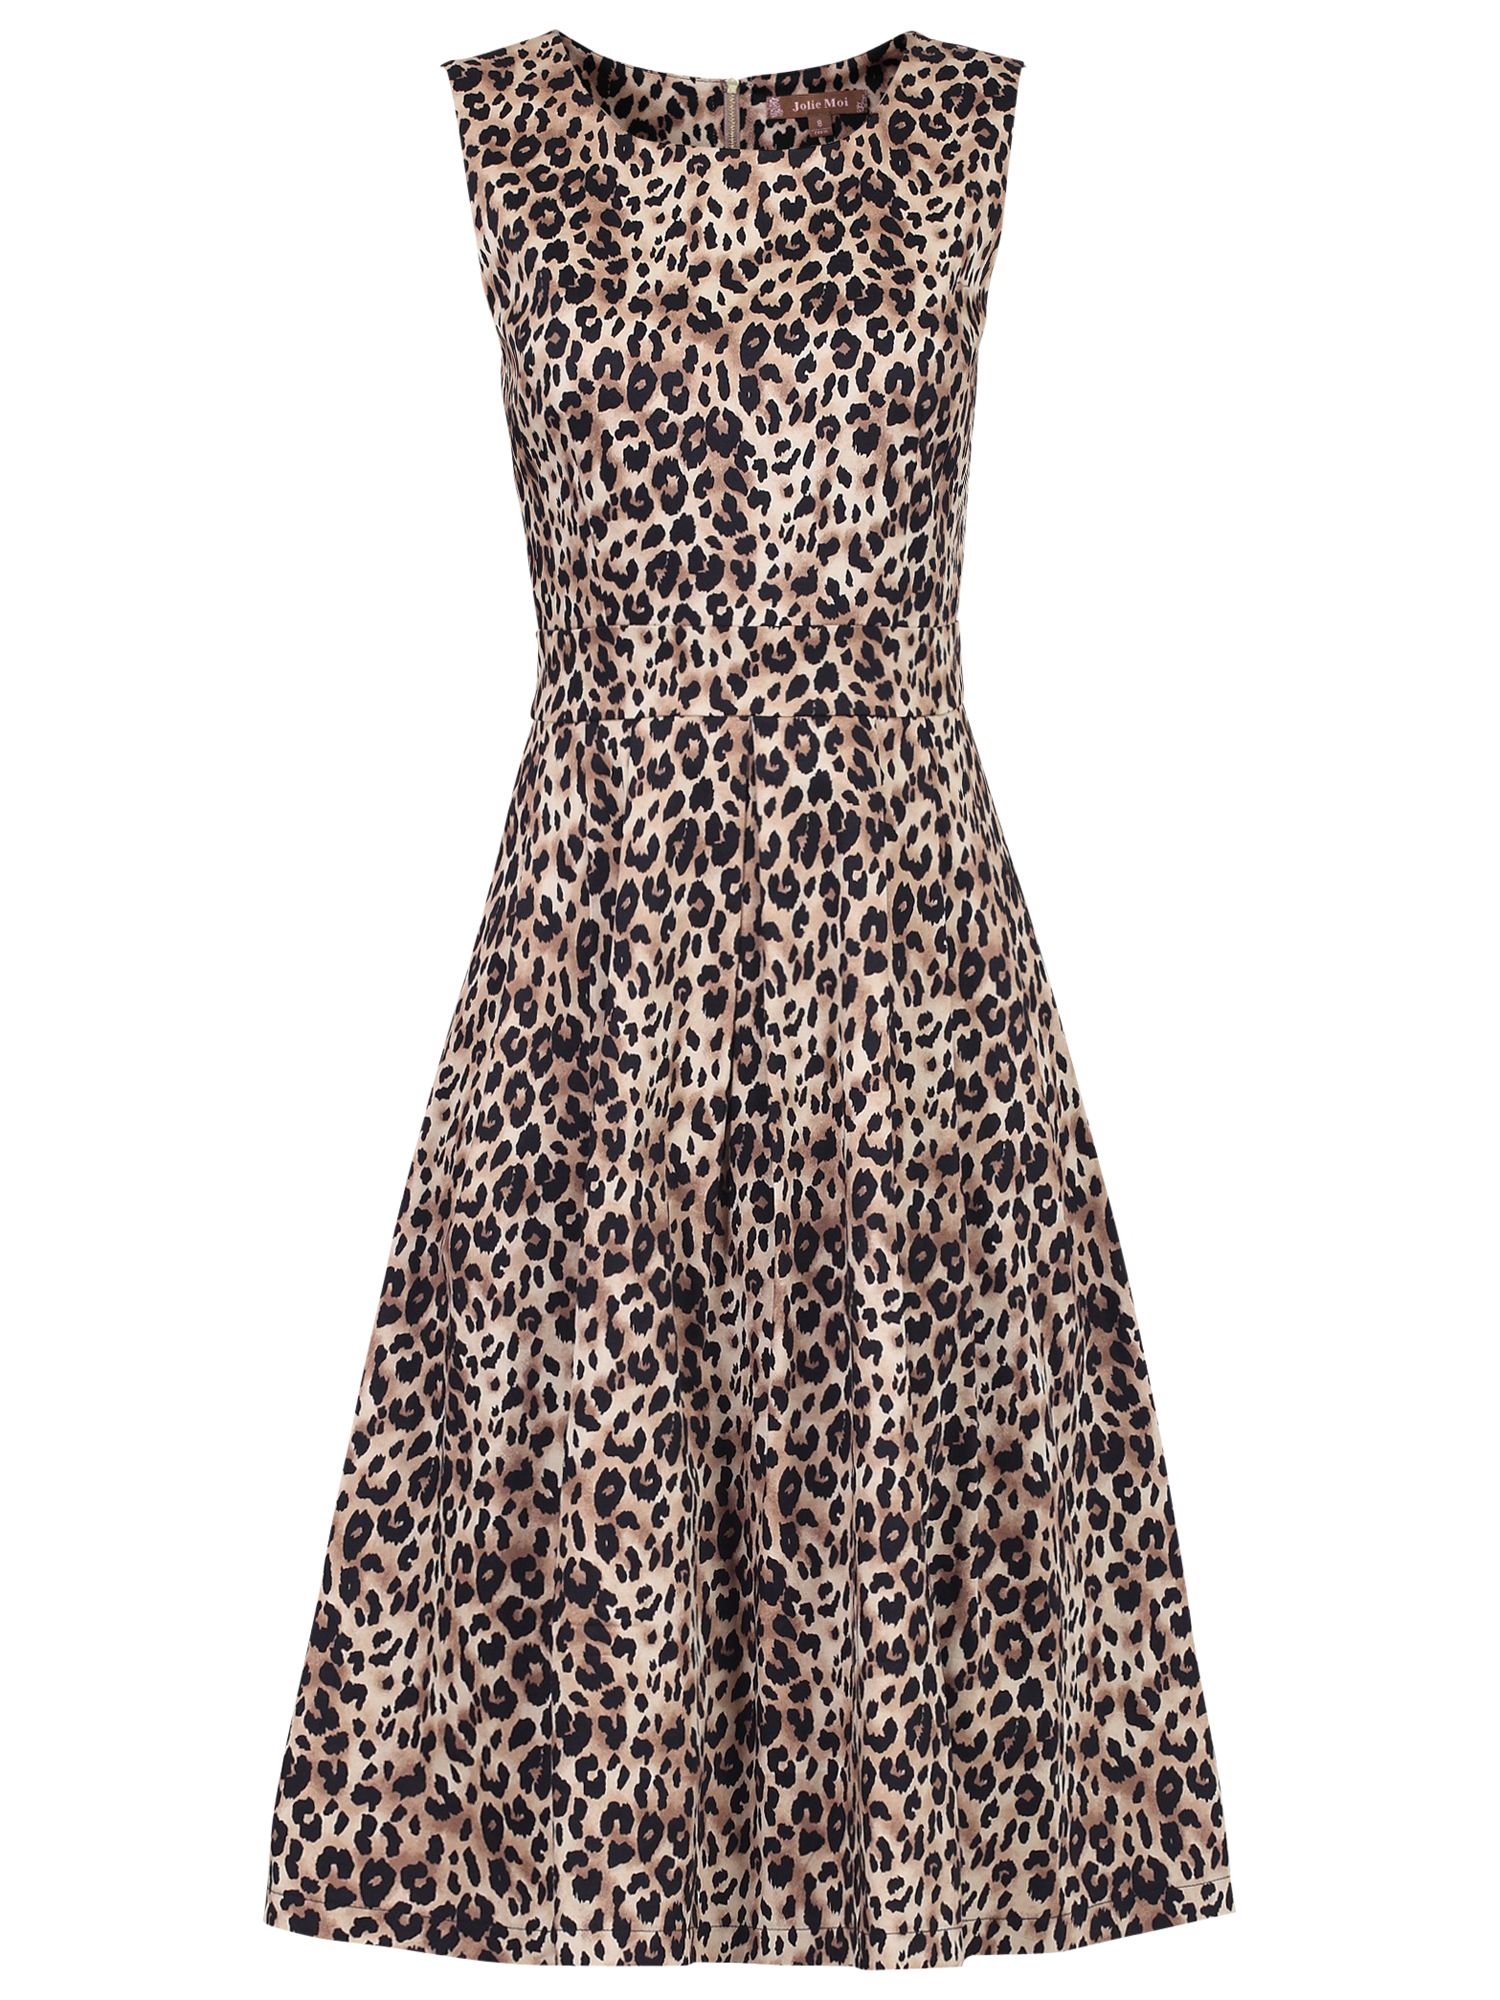 leopard print 50s dress